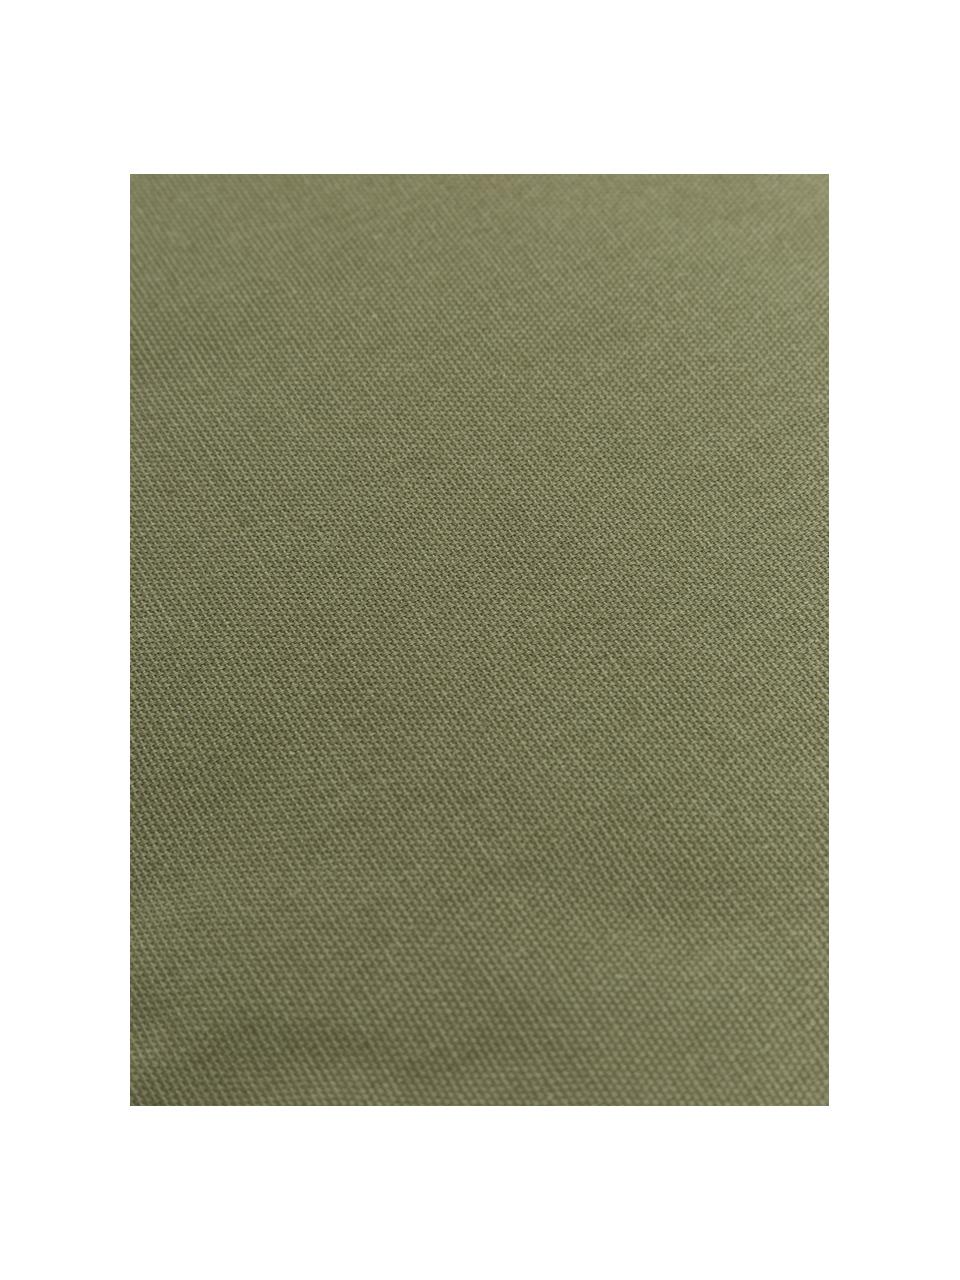 Hohes Sitzkissen Zoey, 2 Stück, Bezug: 100% Baumwolle, Olivgrün, B 40 x L 40 cm